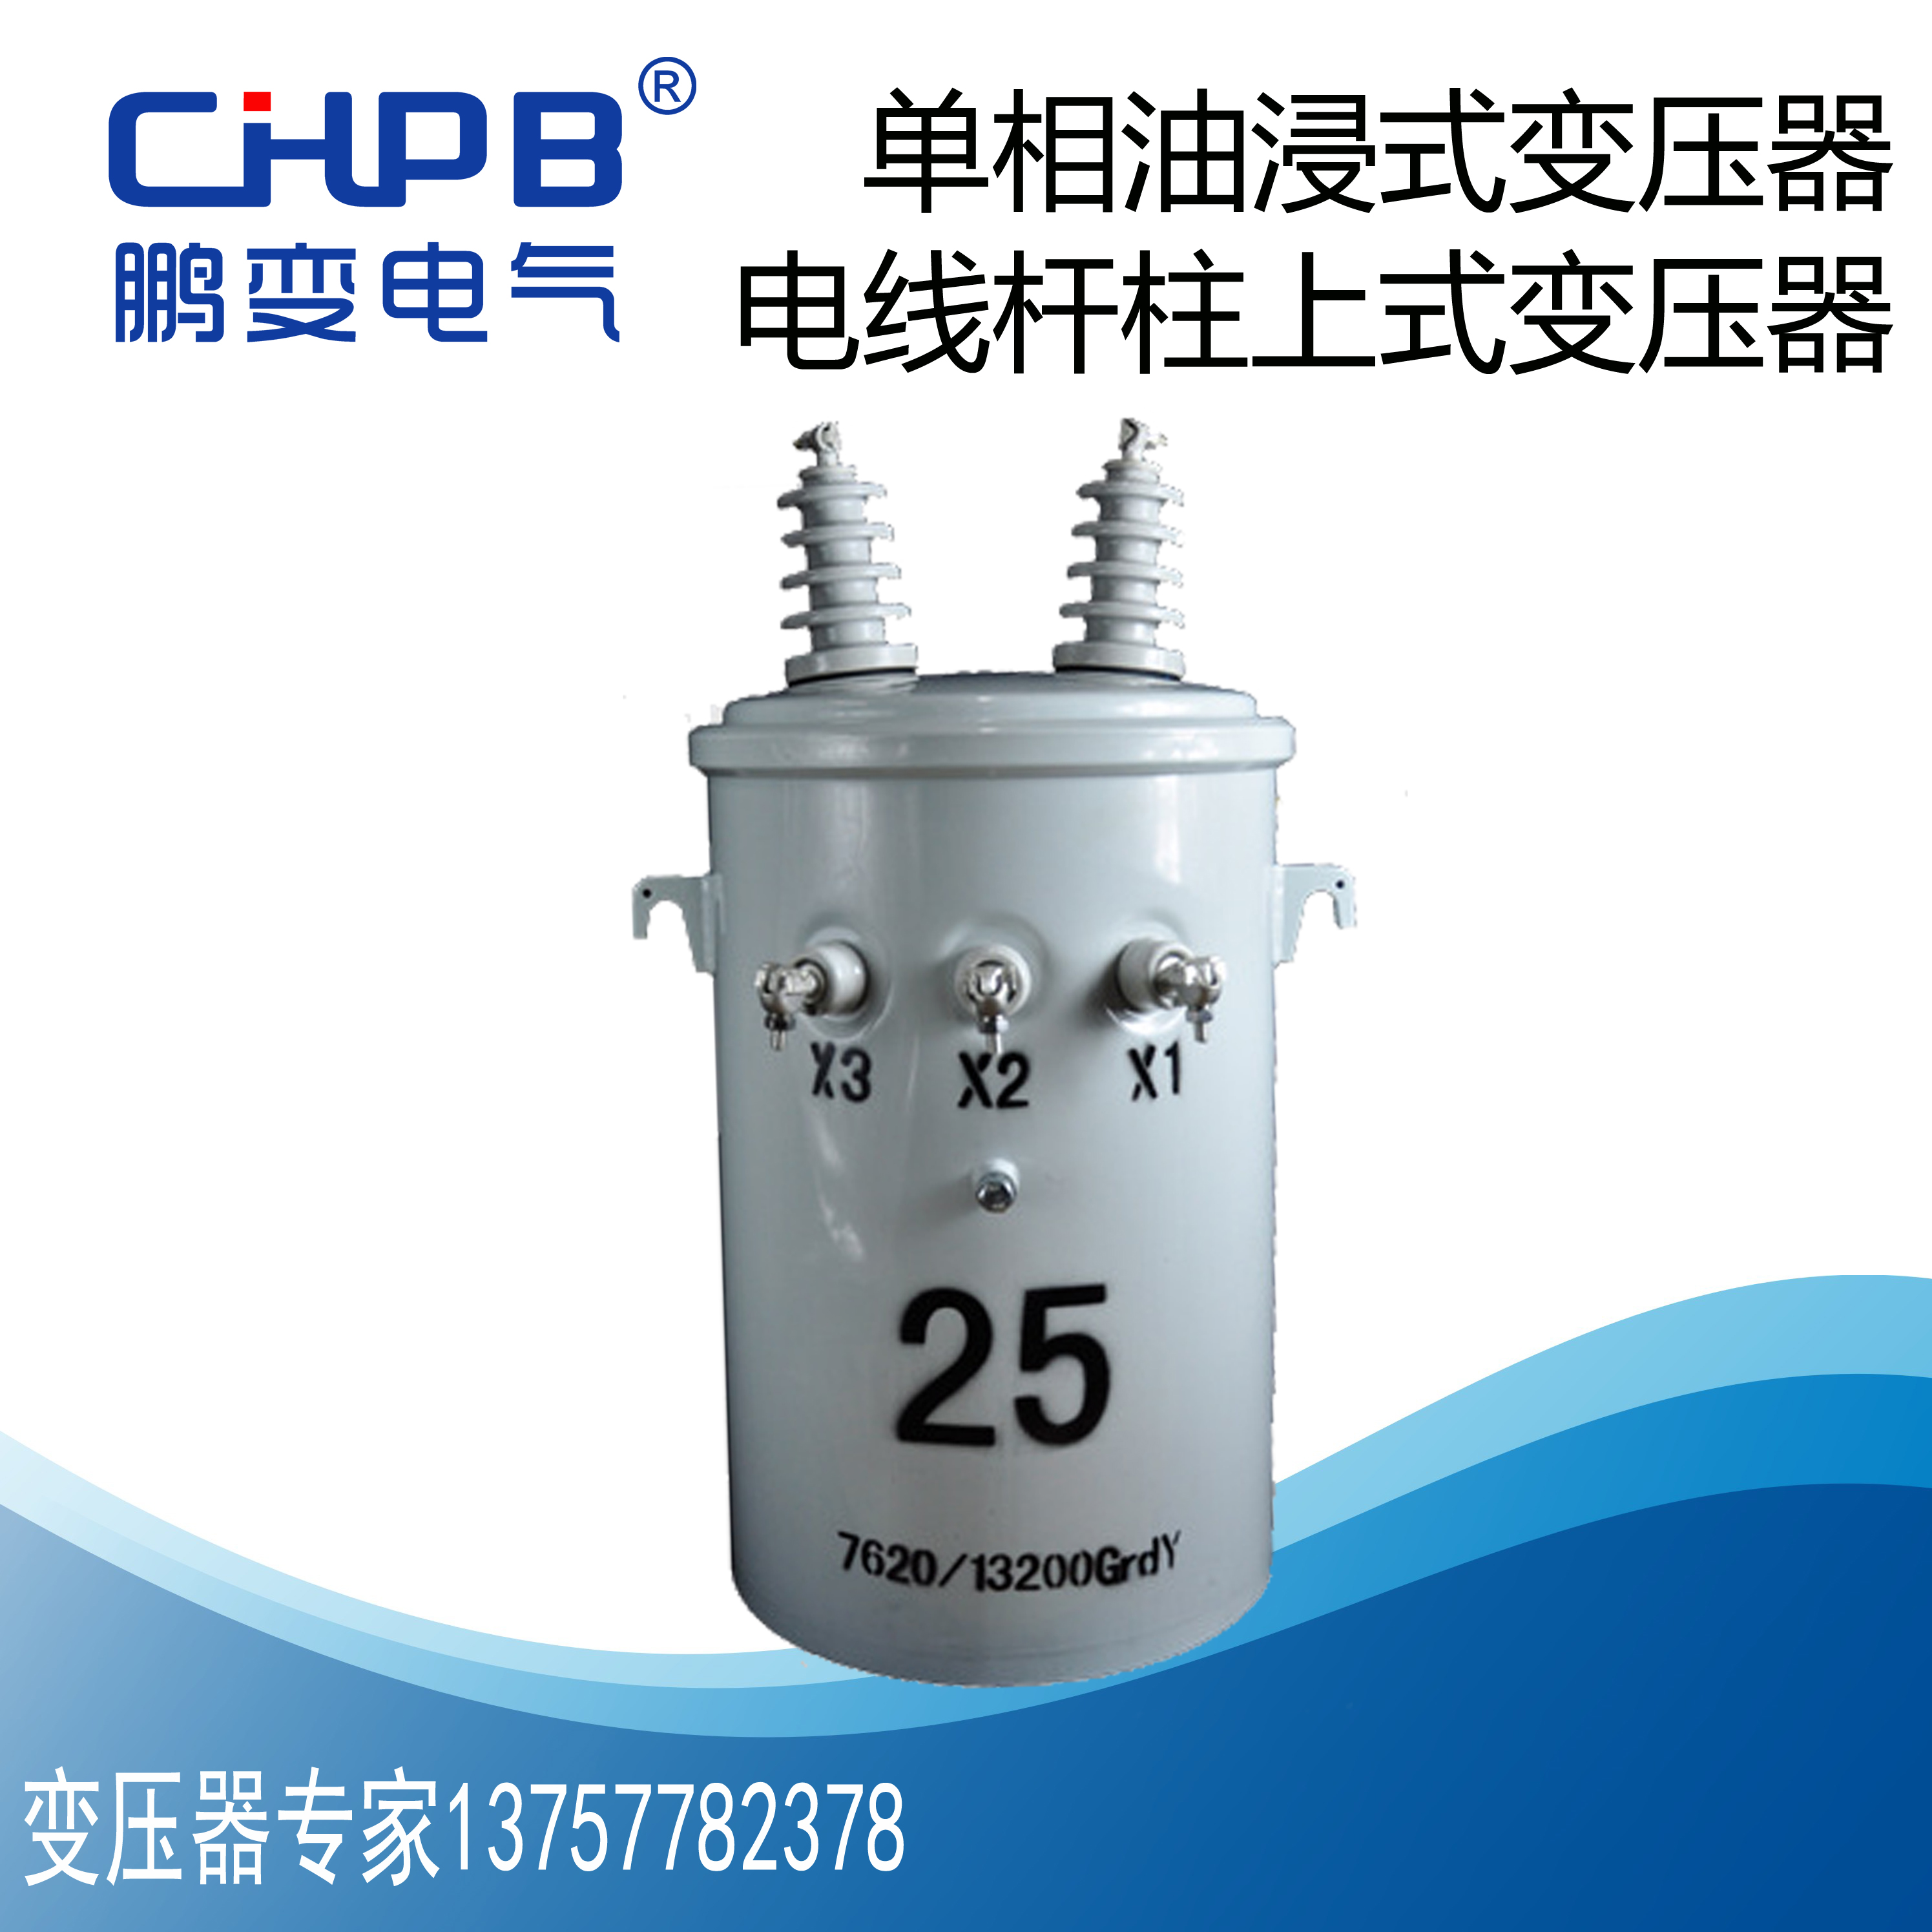 浙江变压器厂家直销高品质单相柱上式油浸式电力变压器D11-30kva图片